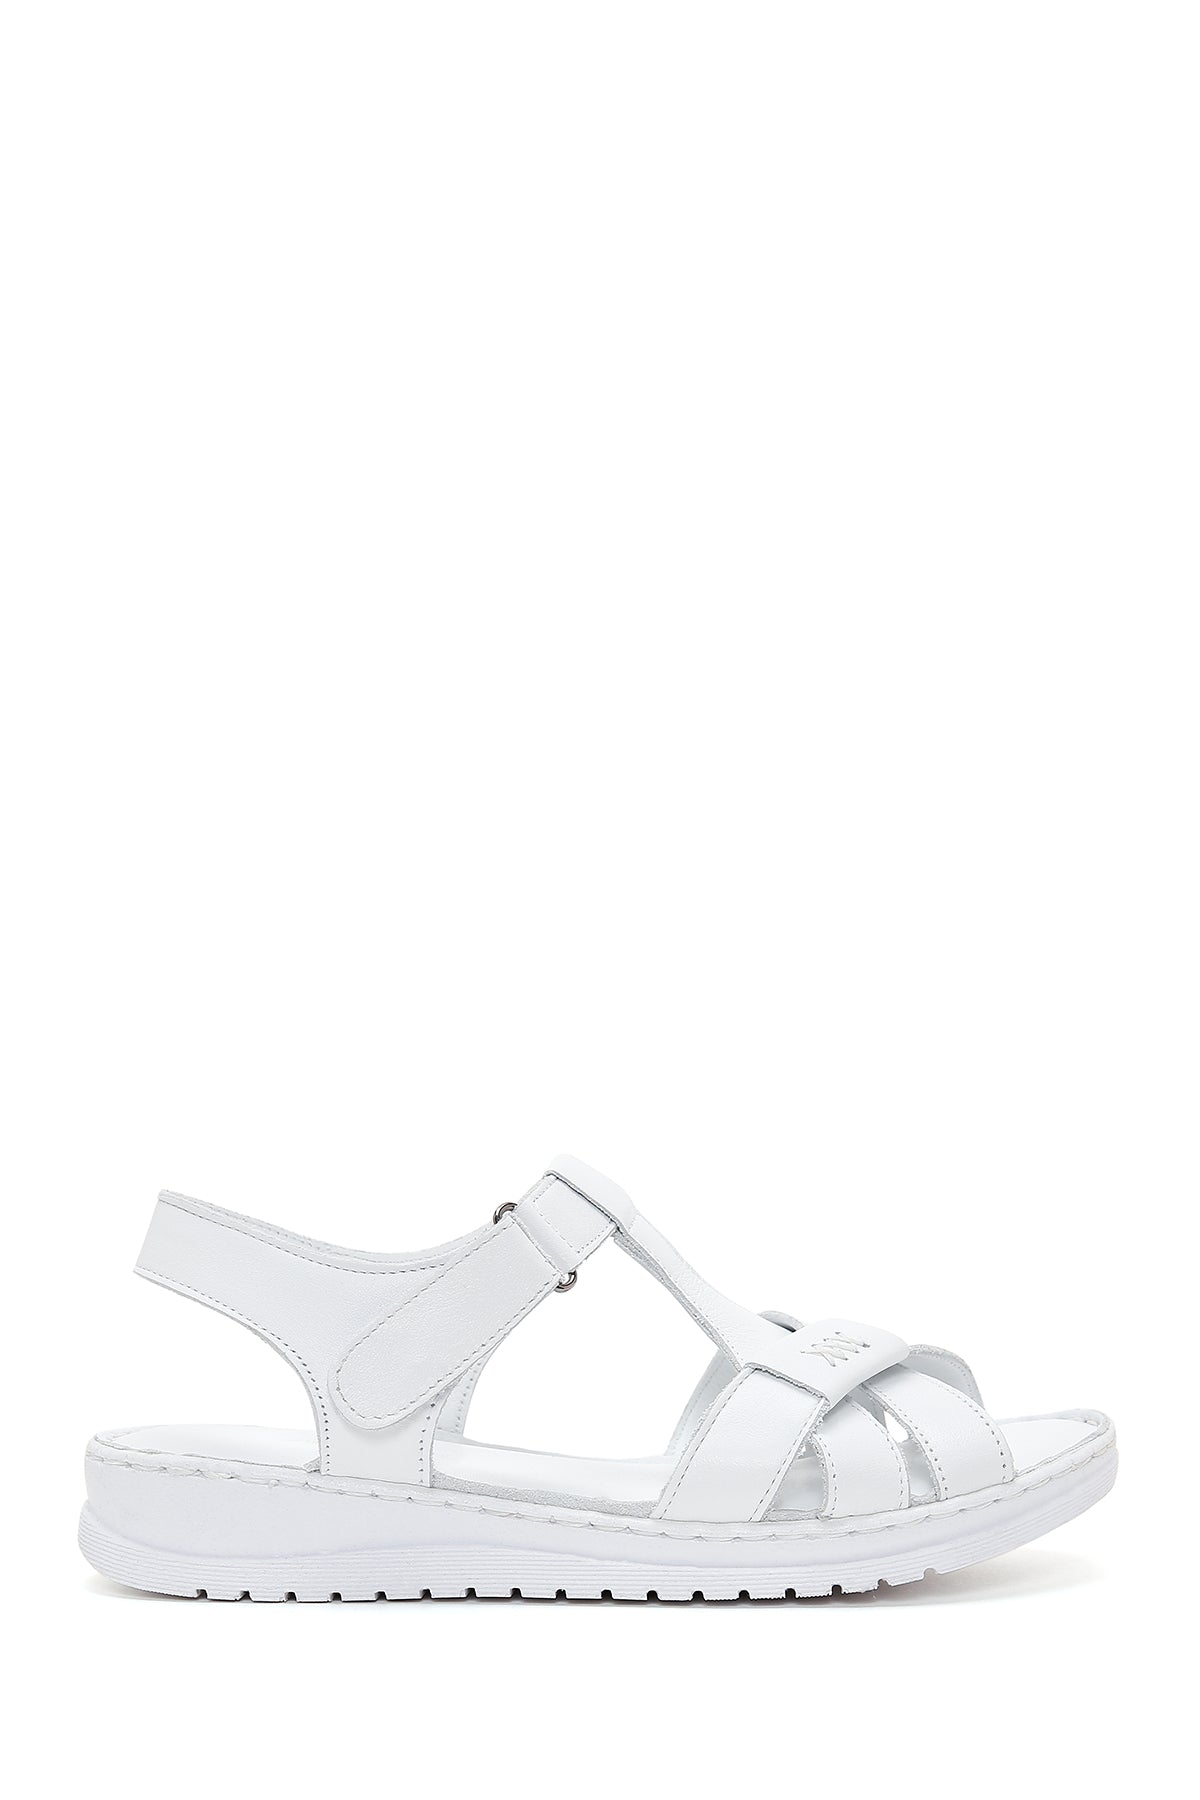 Kadın Beyaz Deri Comfort Sandalet